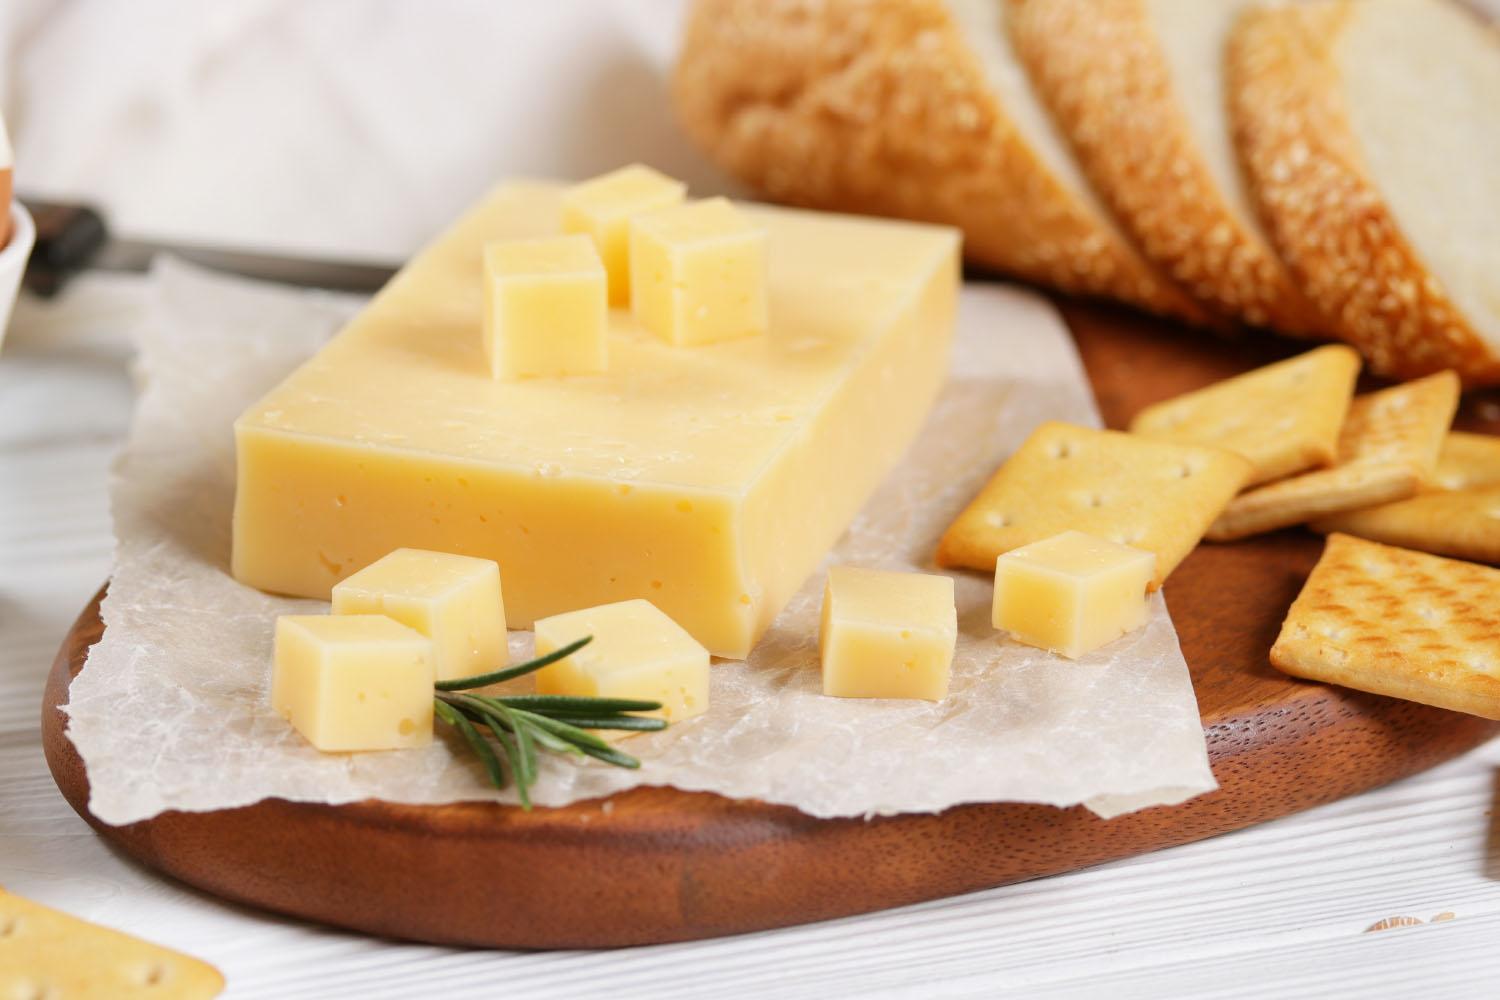 Сыр фасованный «Ермолинский»